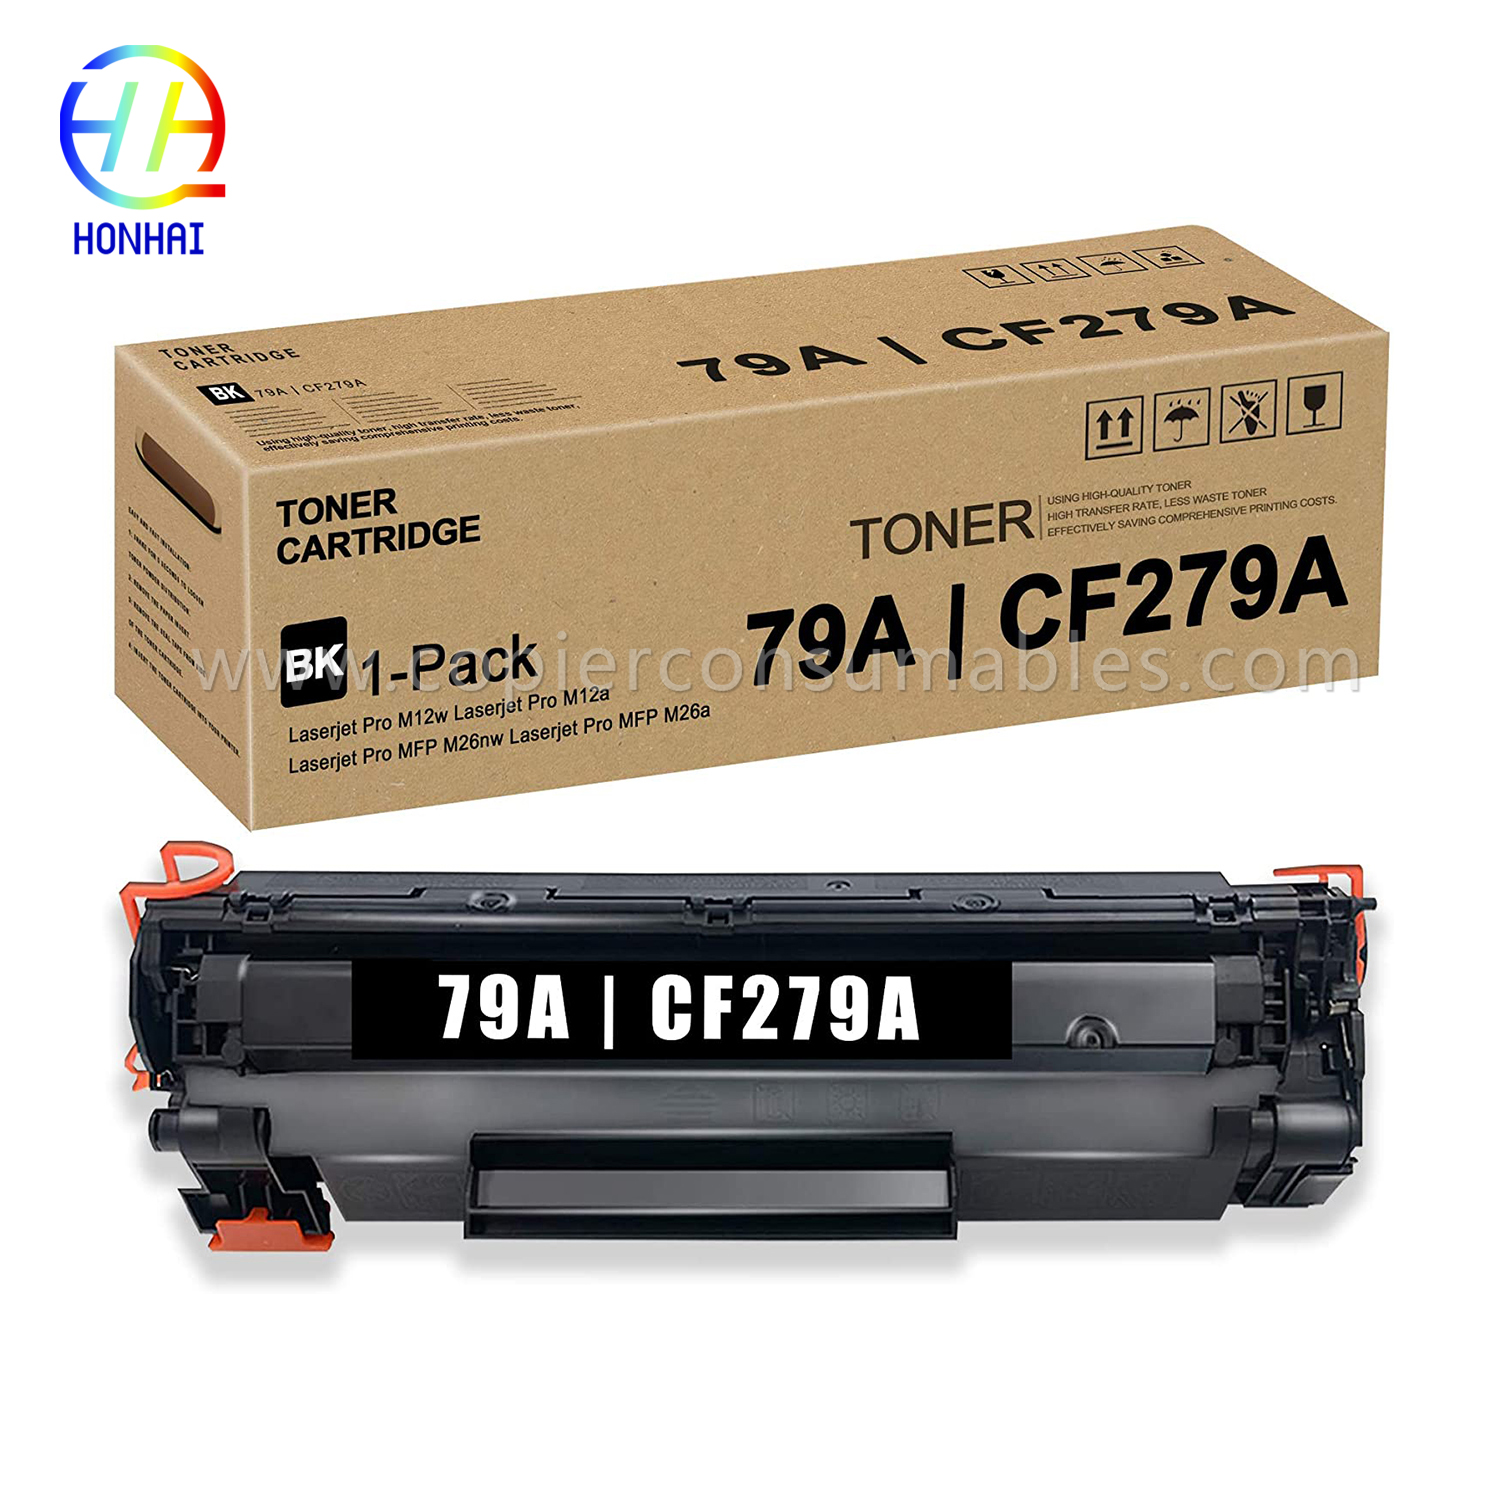 Kartrid Toner kanggo HP Laserjet PRO M12W Mfp M26 M26nw (CF279A)